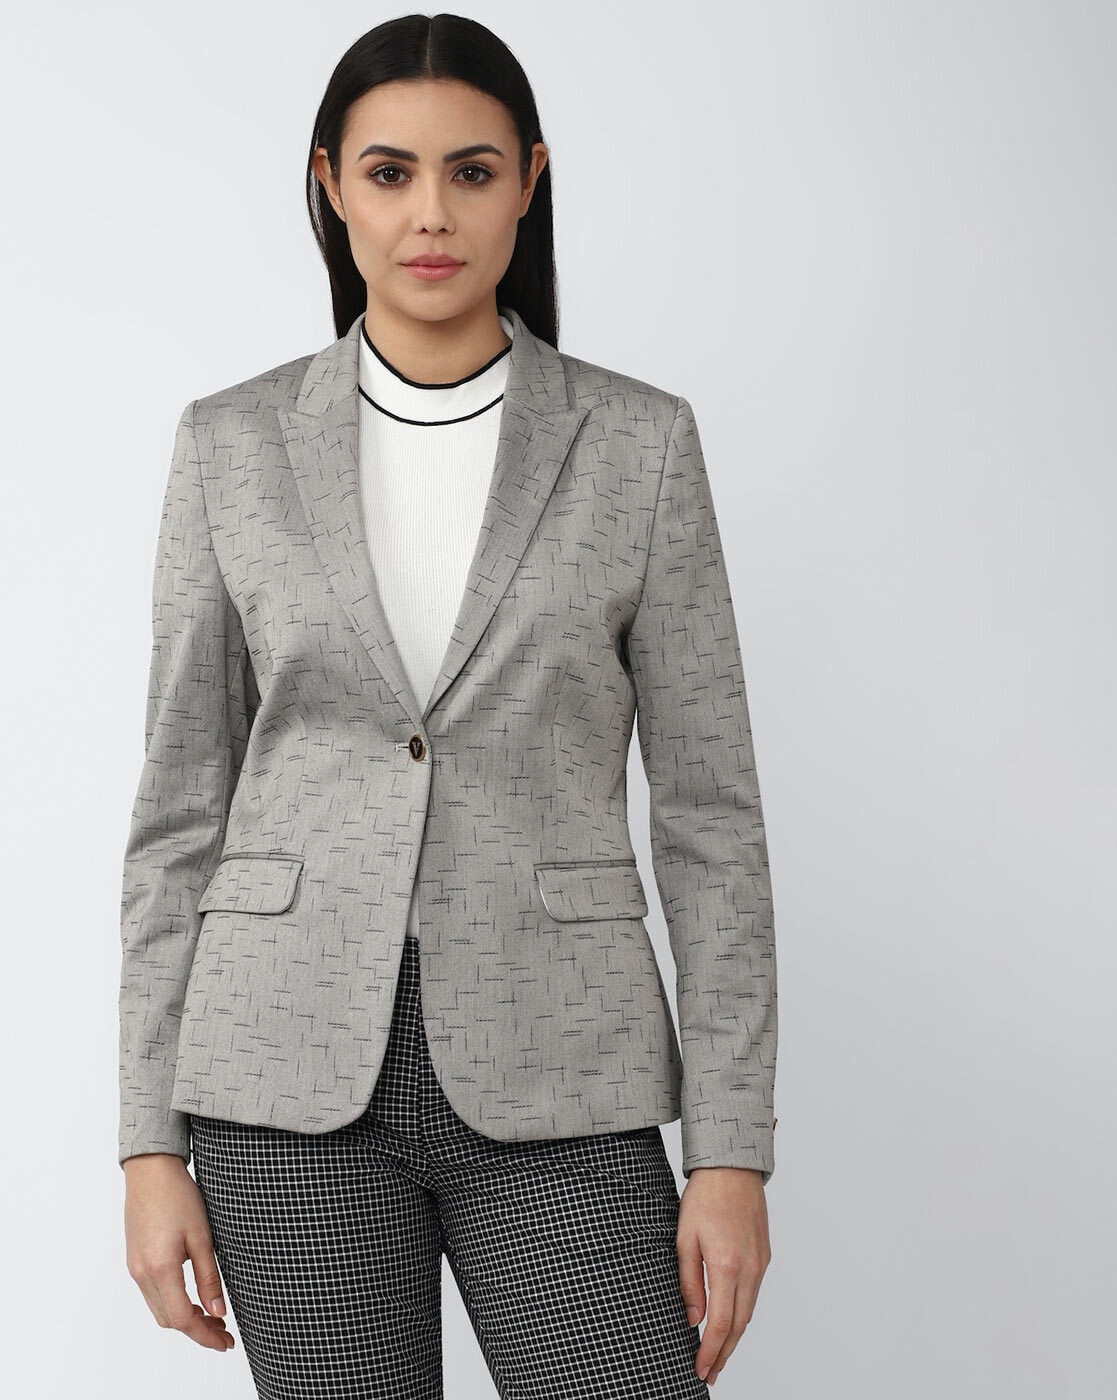 Women Slim Fit Long Sleeve Blazer Work Jacket Formal Suit Coat Business  Outwear | eBay